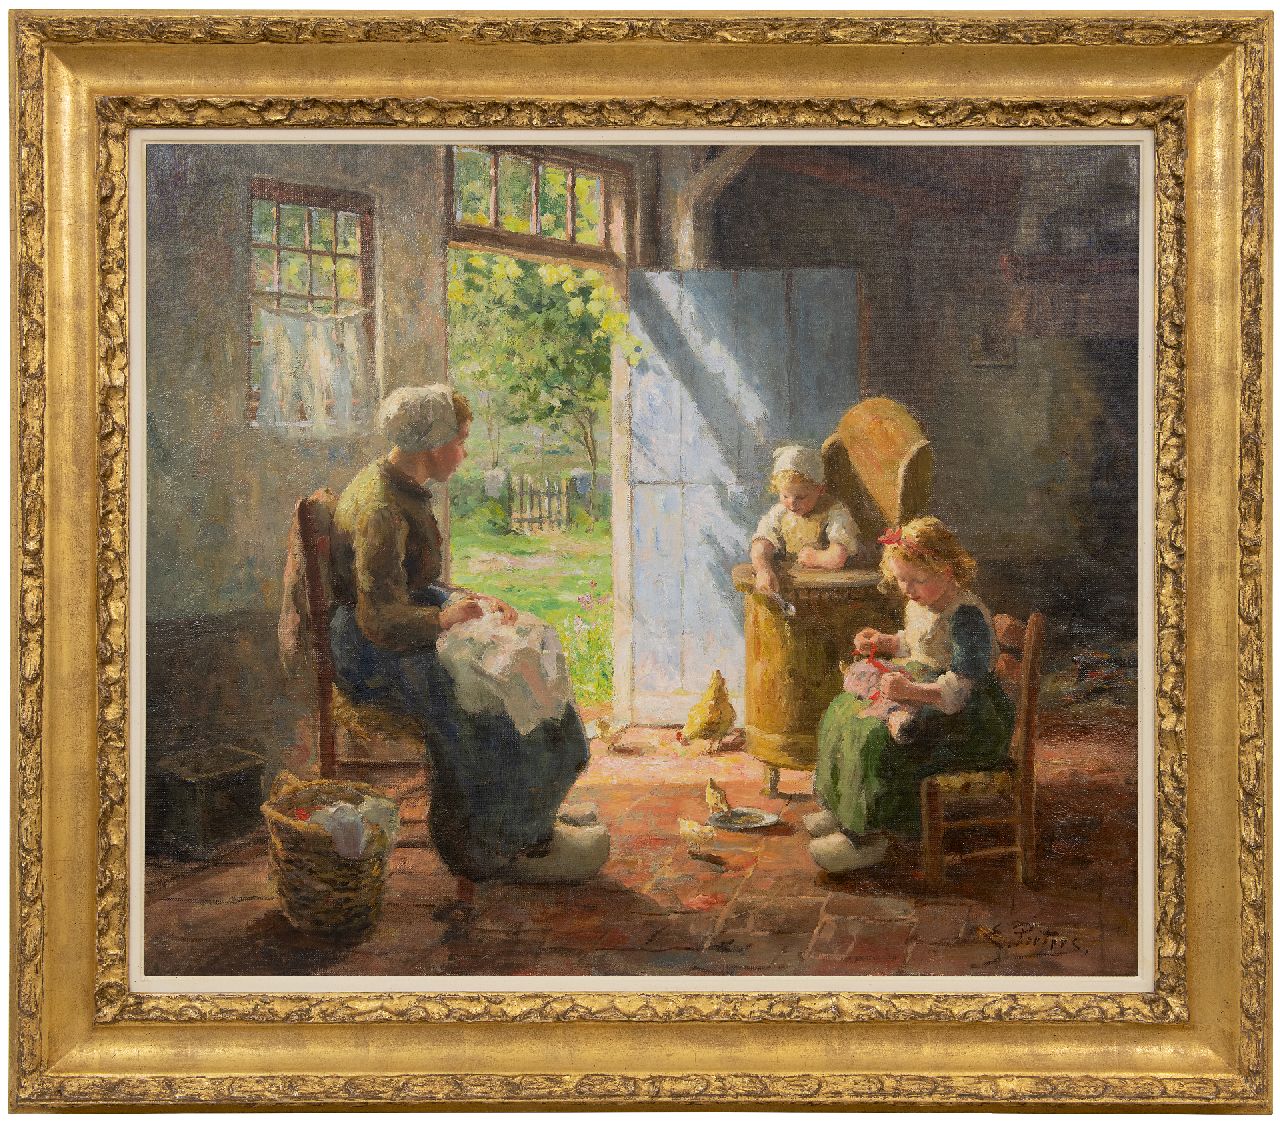 Pieters E.  | Evert Pieters | Schilderijen te koop aangeboden | Zonnig Larens binnenhuisje met moeder en kinderen, olieverf op doek 68,1 x 81,2 cm, gesigneerd rechtsonder